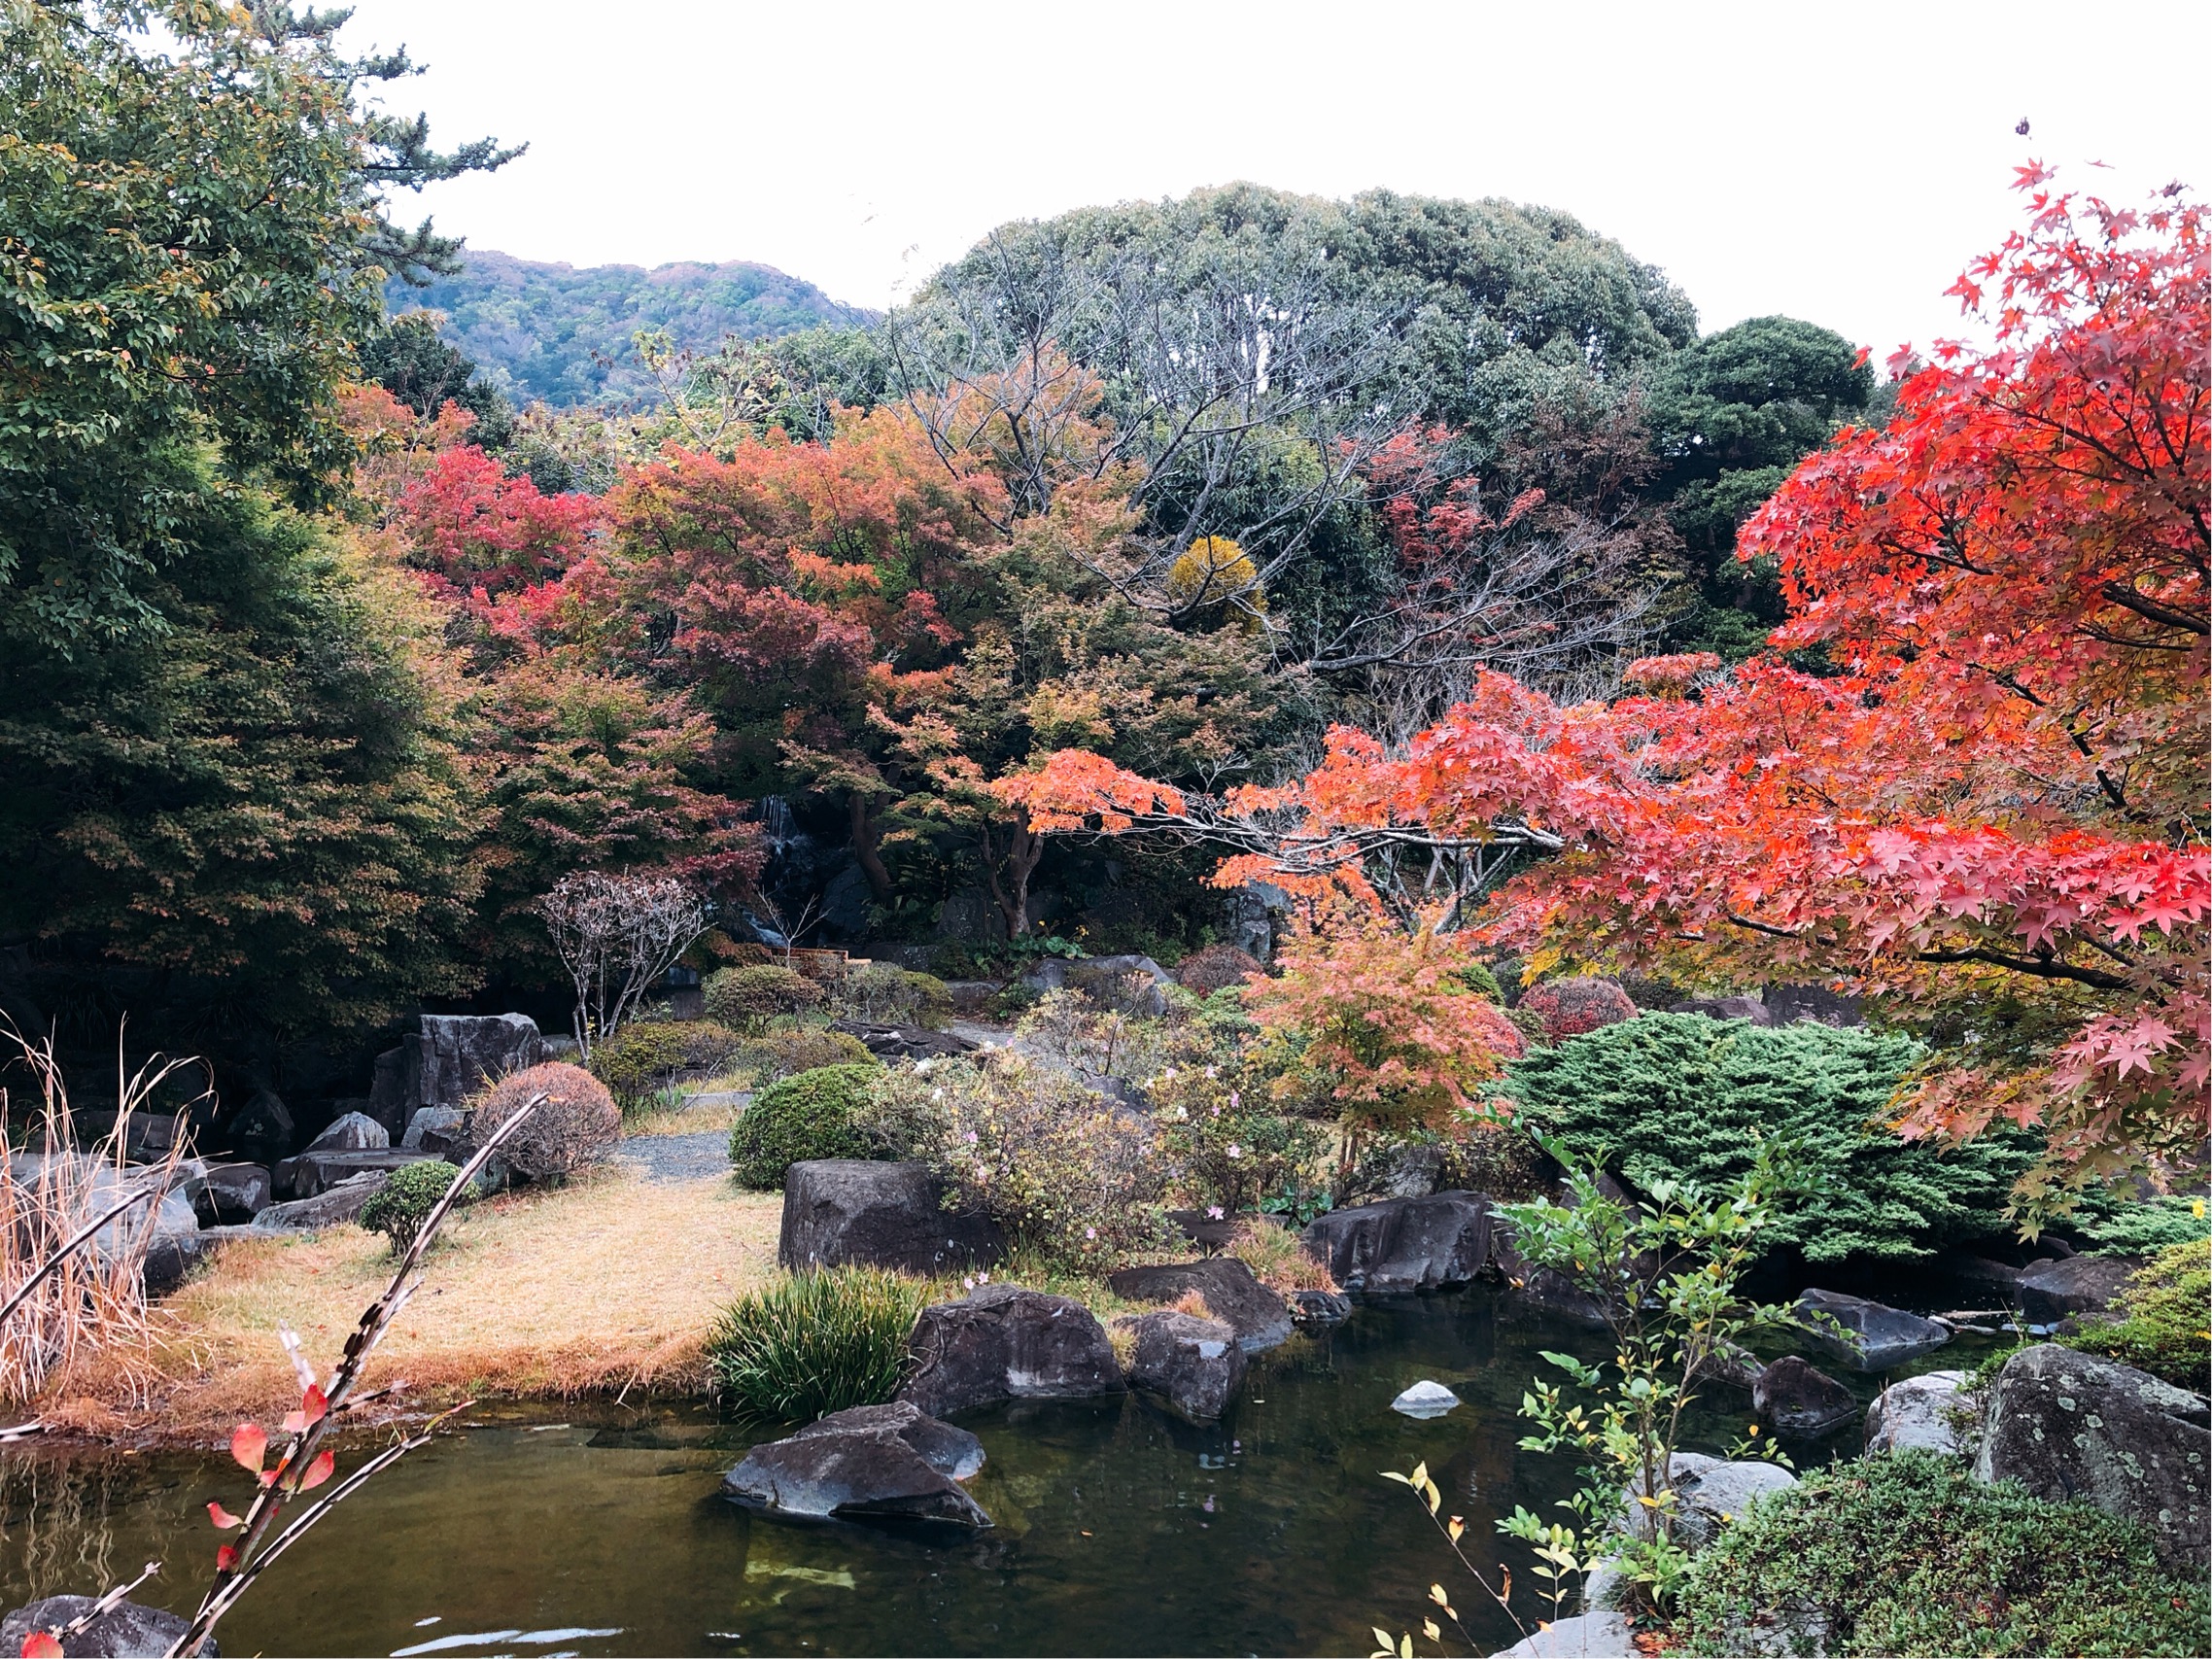 しおさい公園の紅葉。まだ一部だけの色づきだが、池ごしの風景はとても風情がある